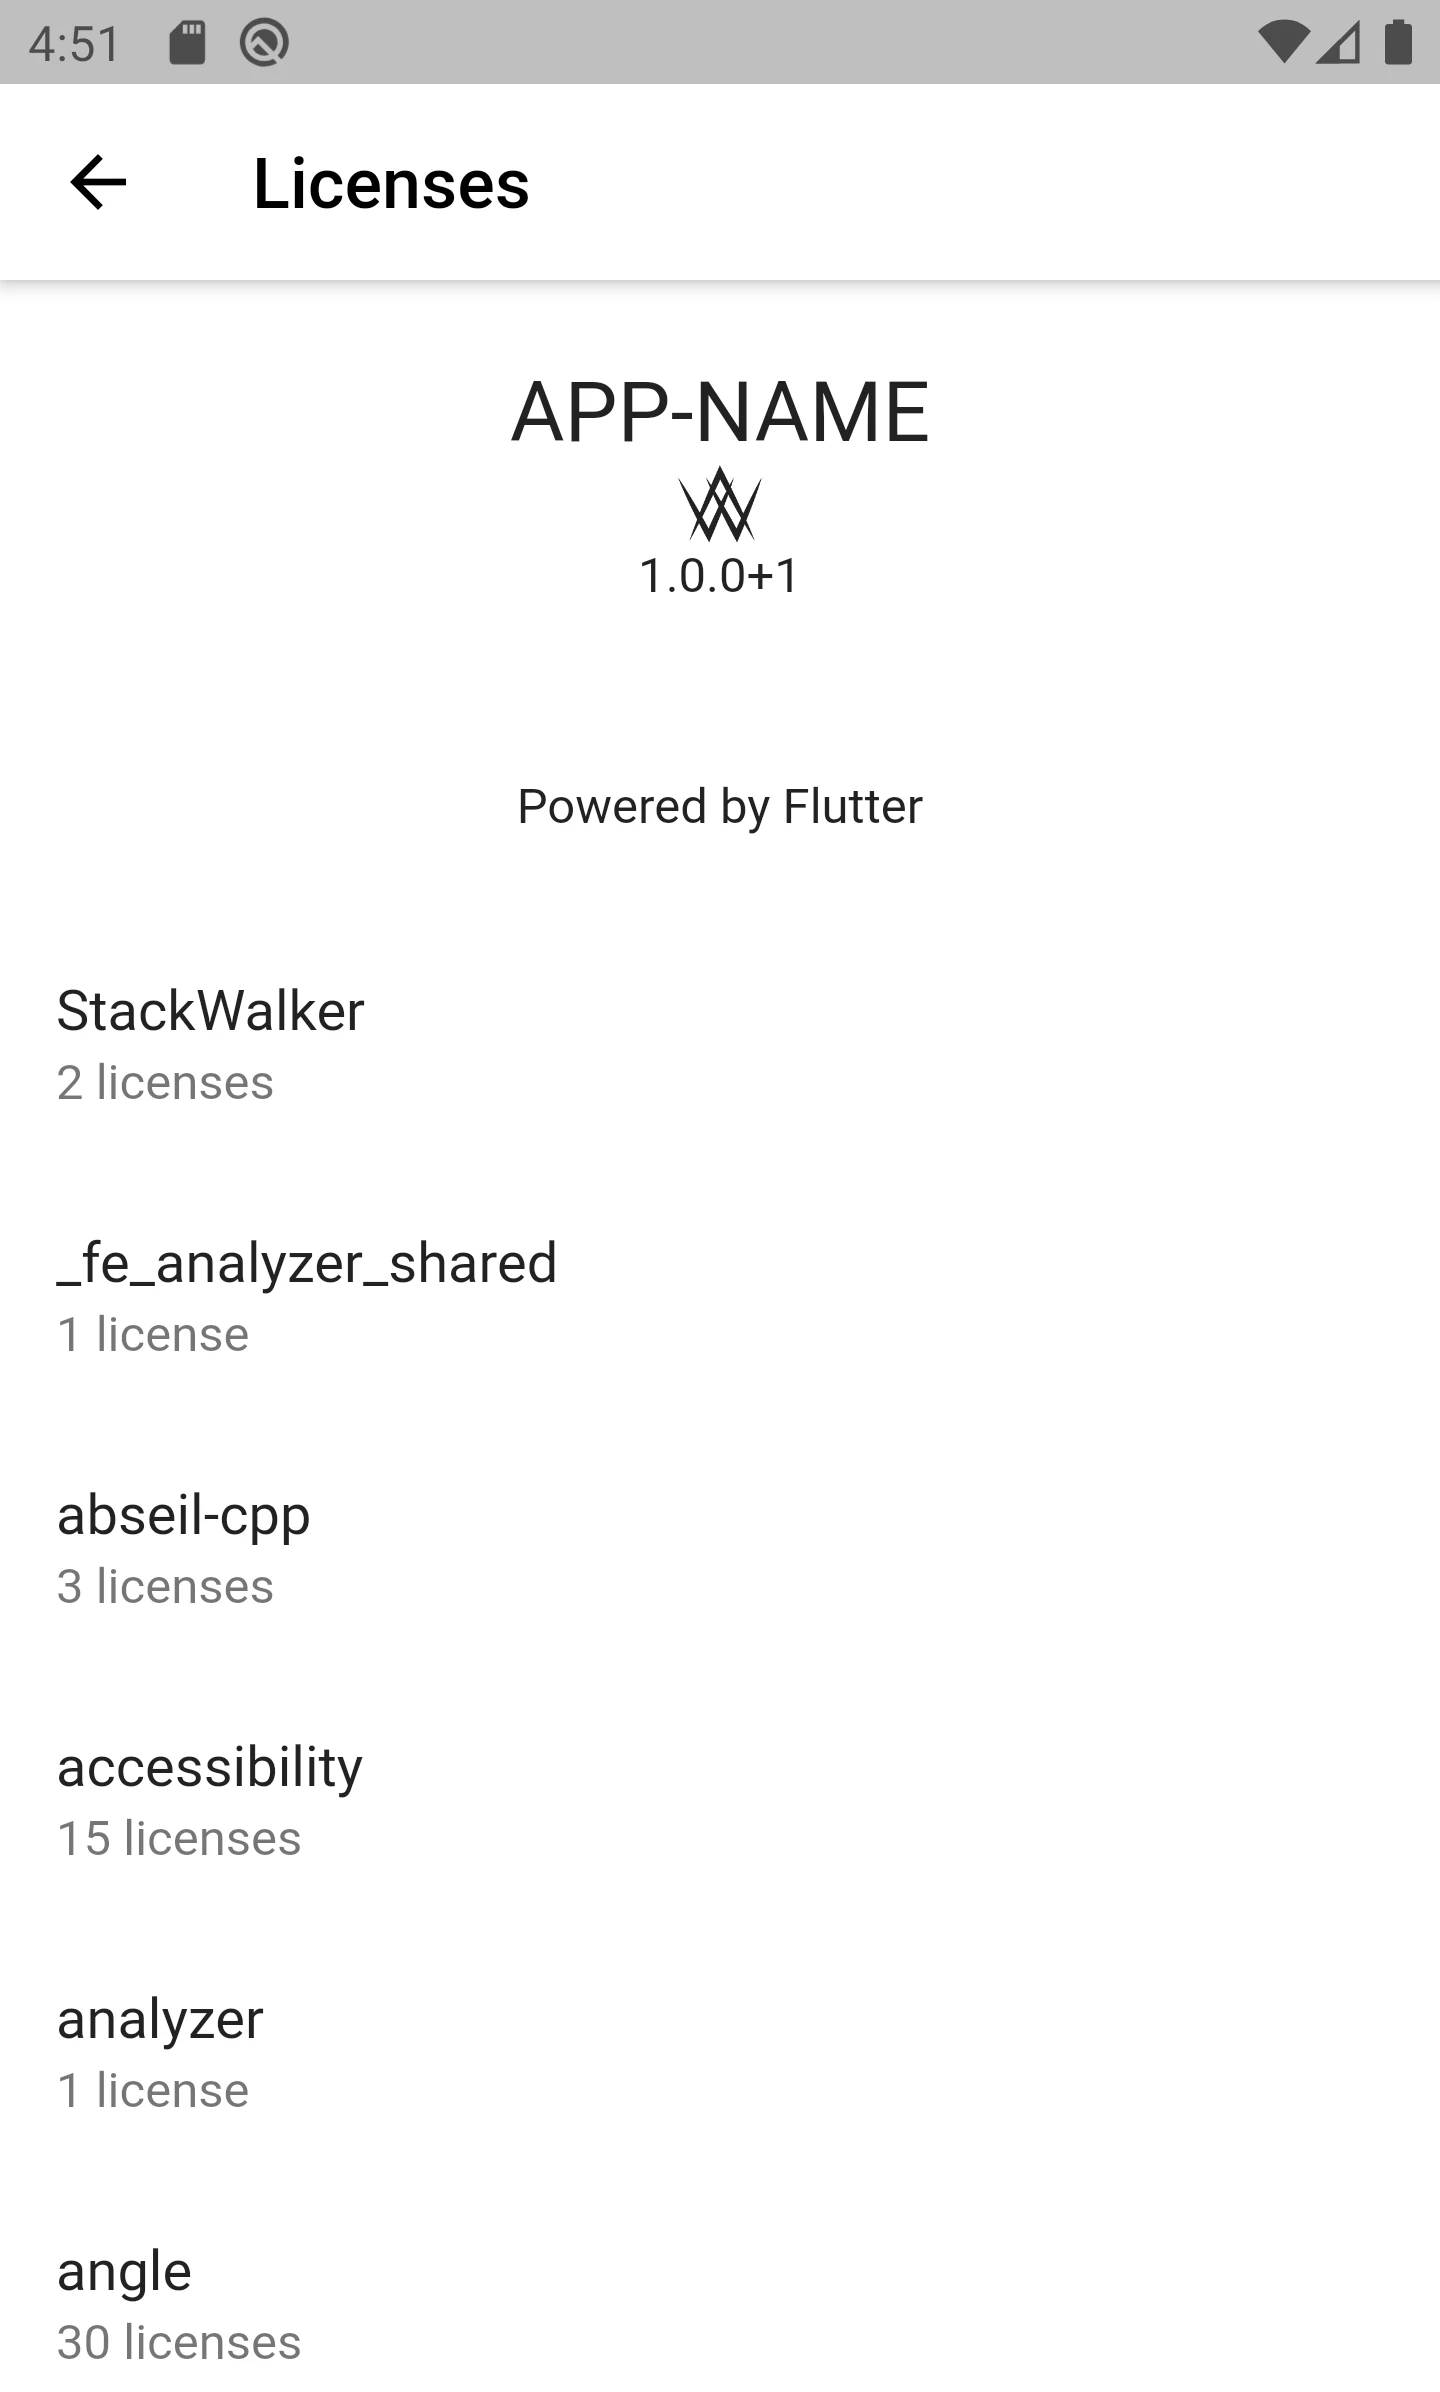 Een schermafbeelding van de pagina die de licenties in de app toont